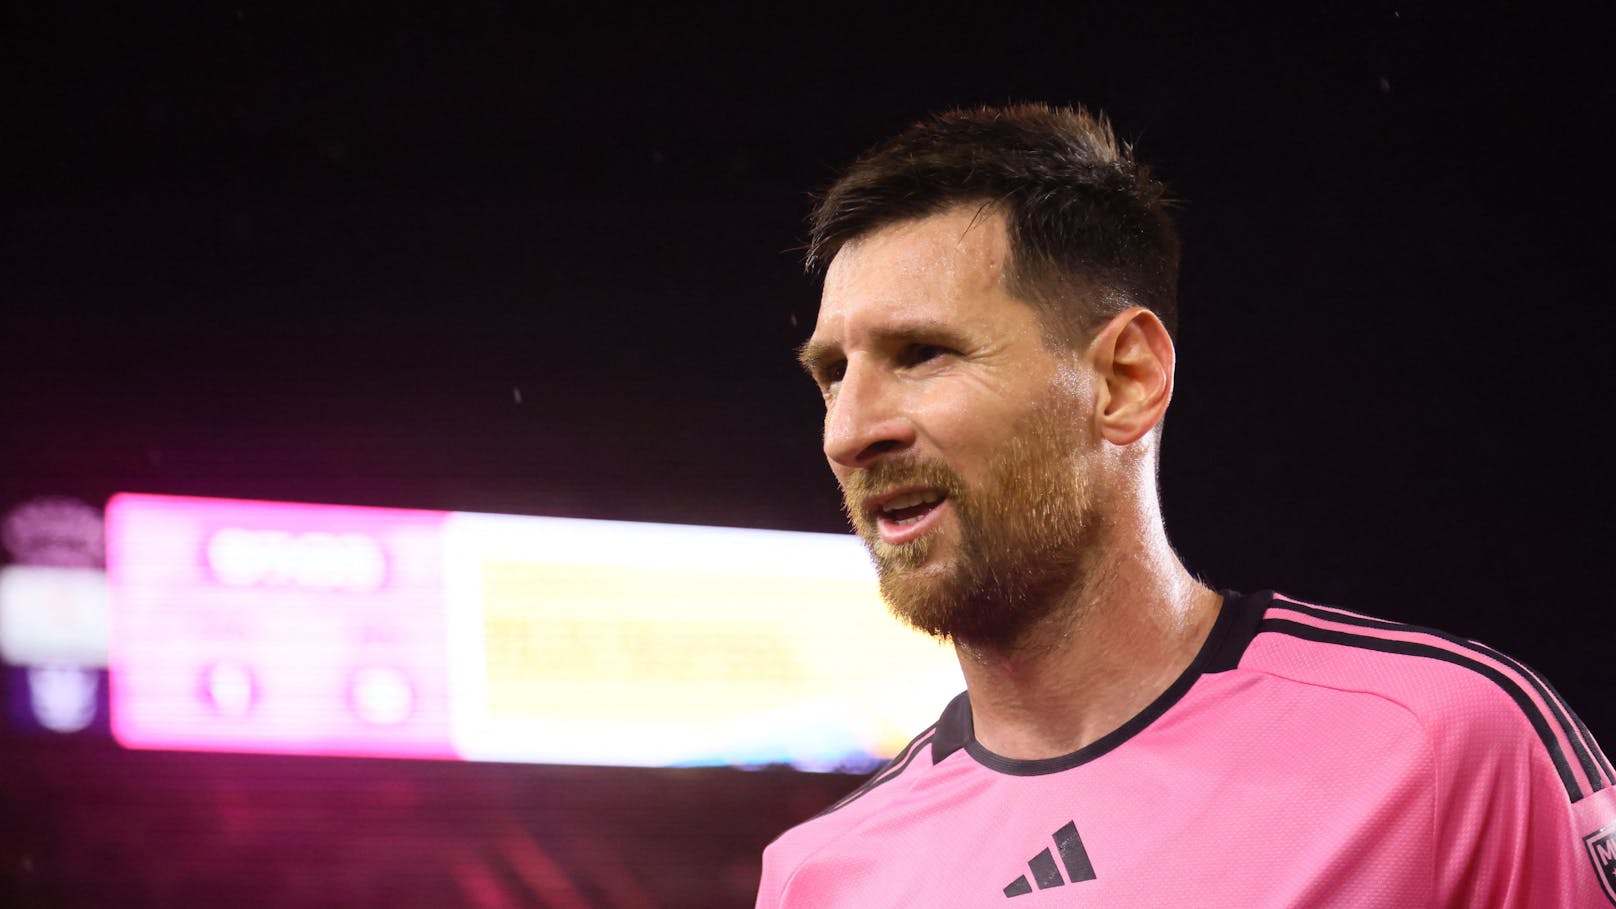 Fußball-Ikone Messi verrät: Habe Therapie gemacht